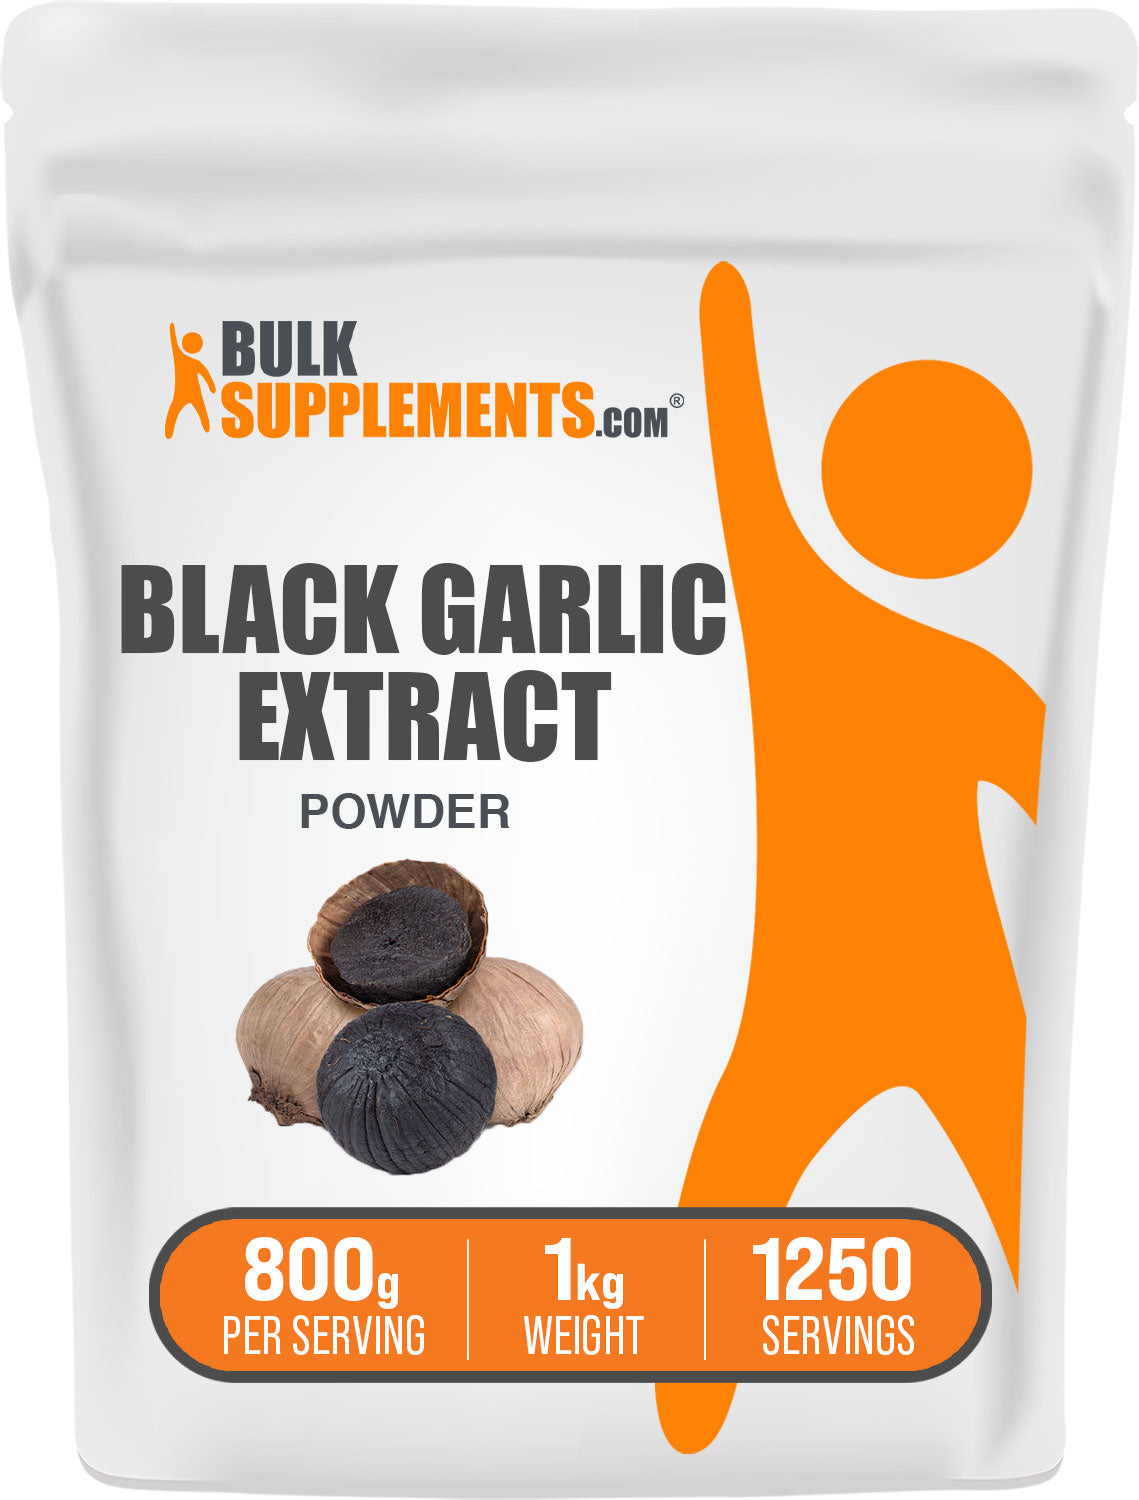 1kg black garlic supplements